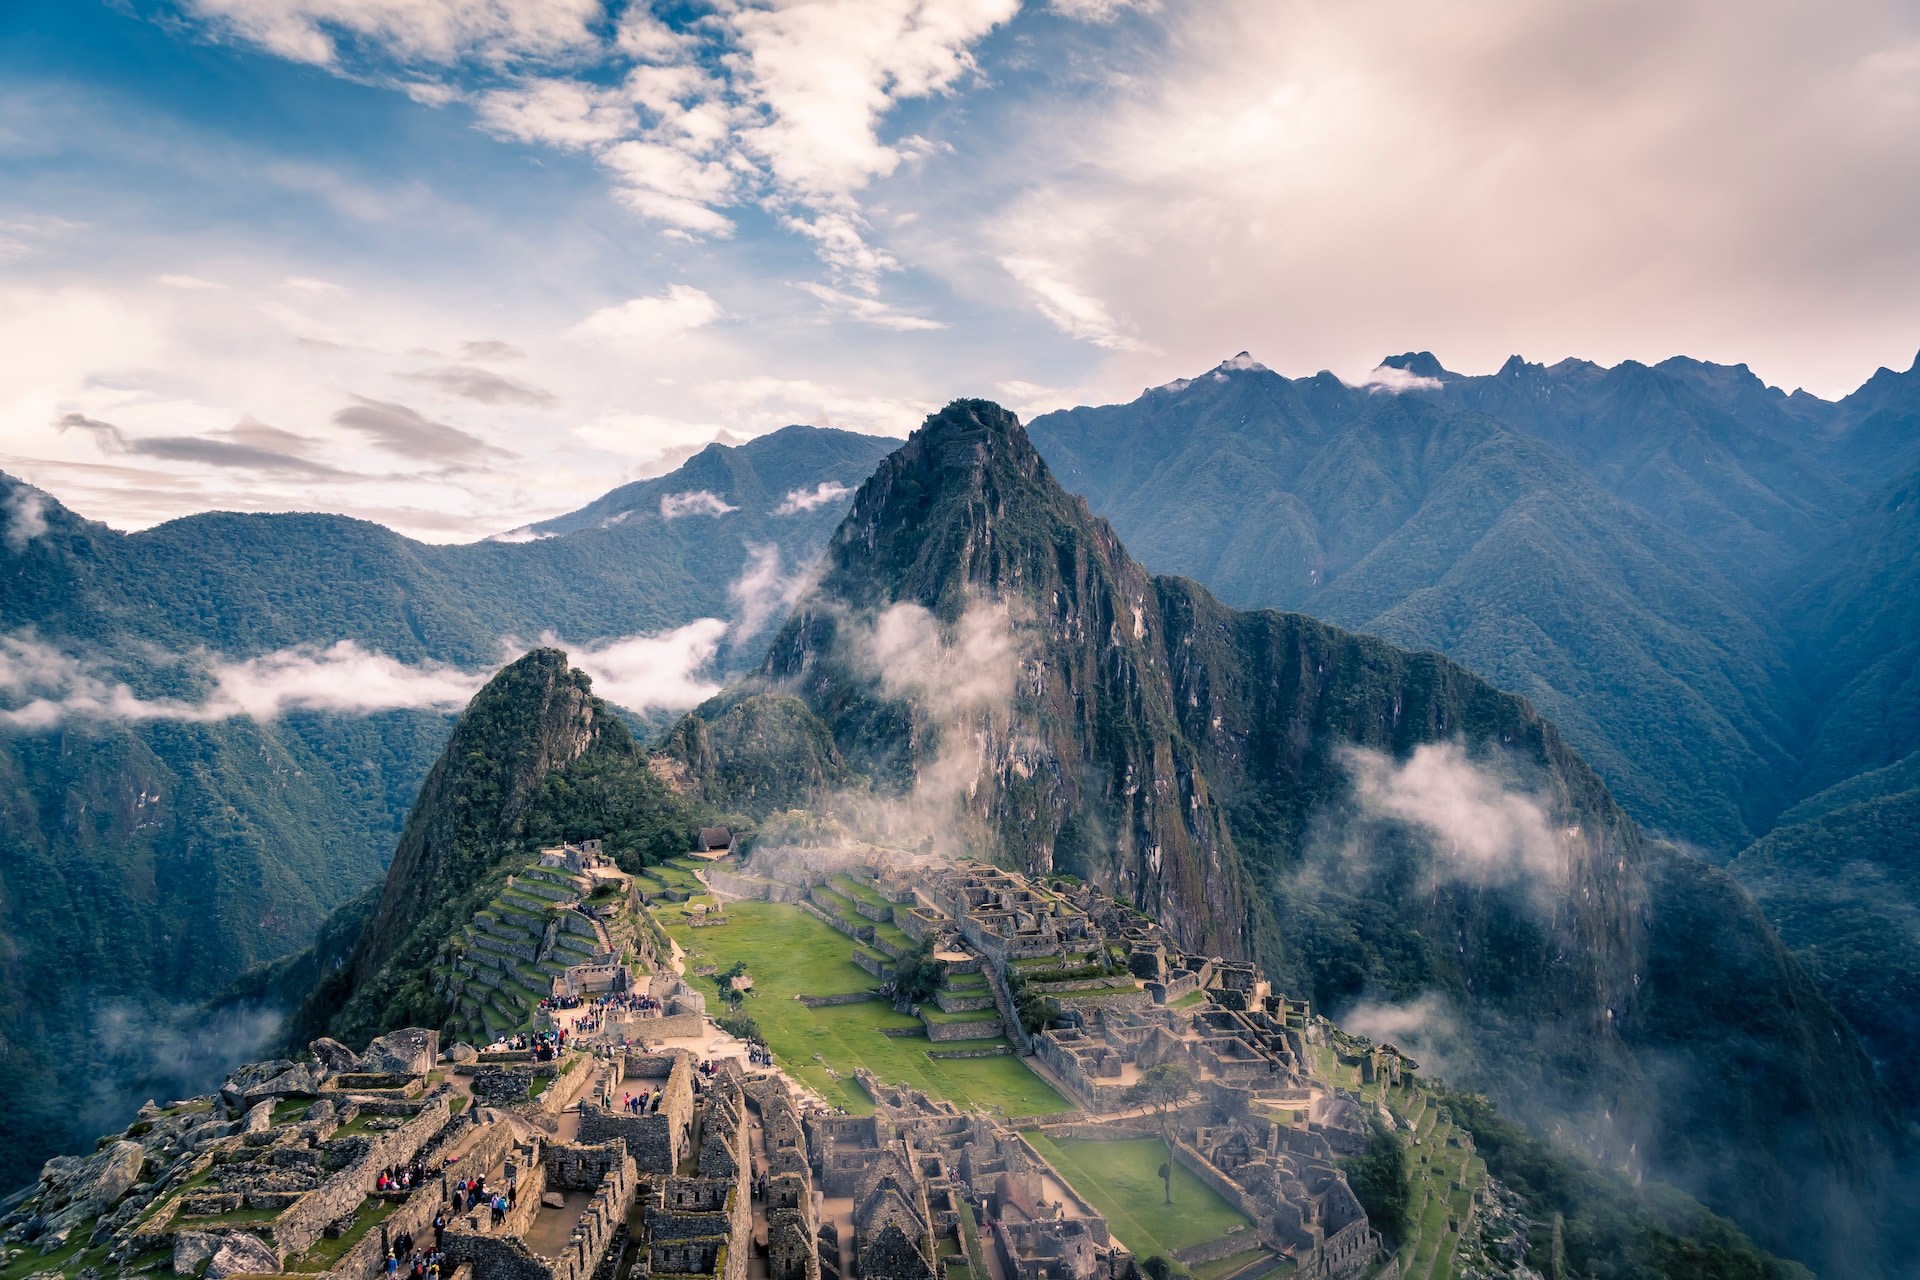 Peru
Adventure